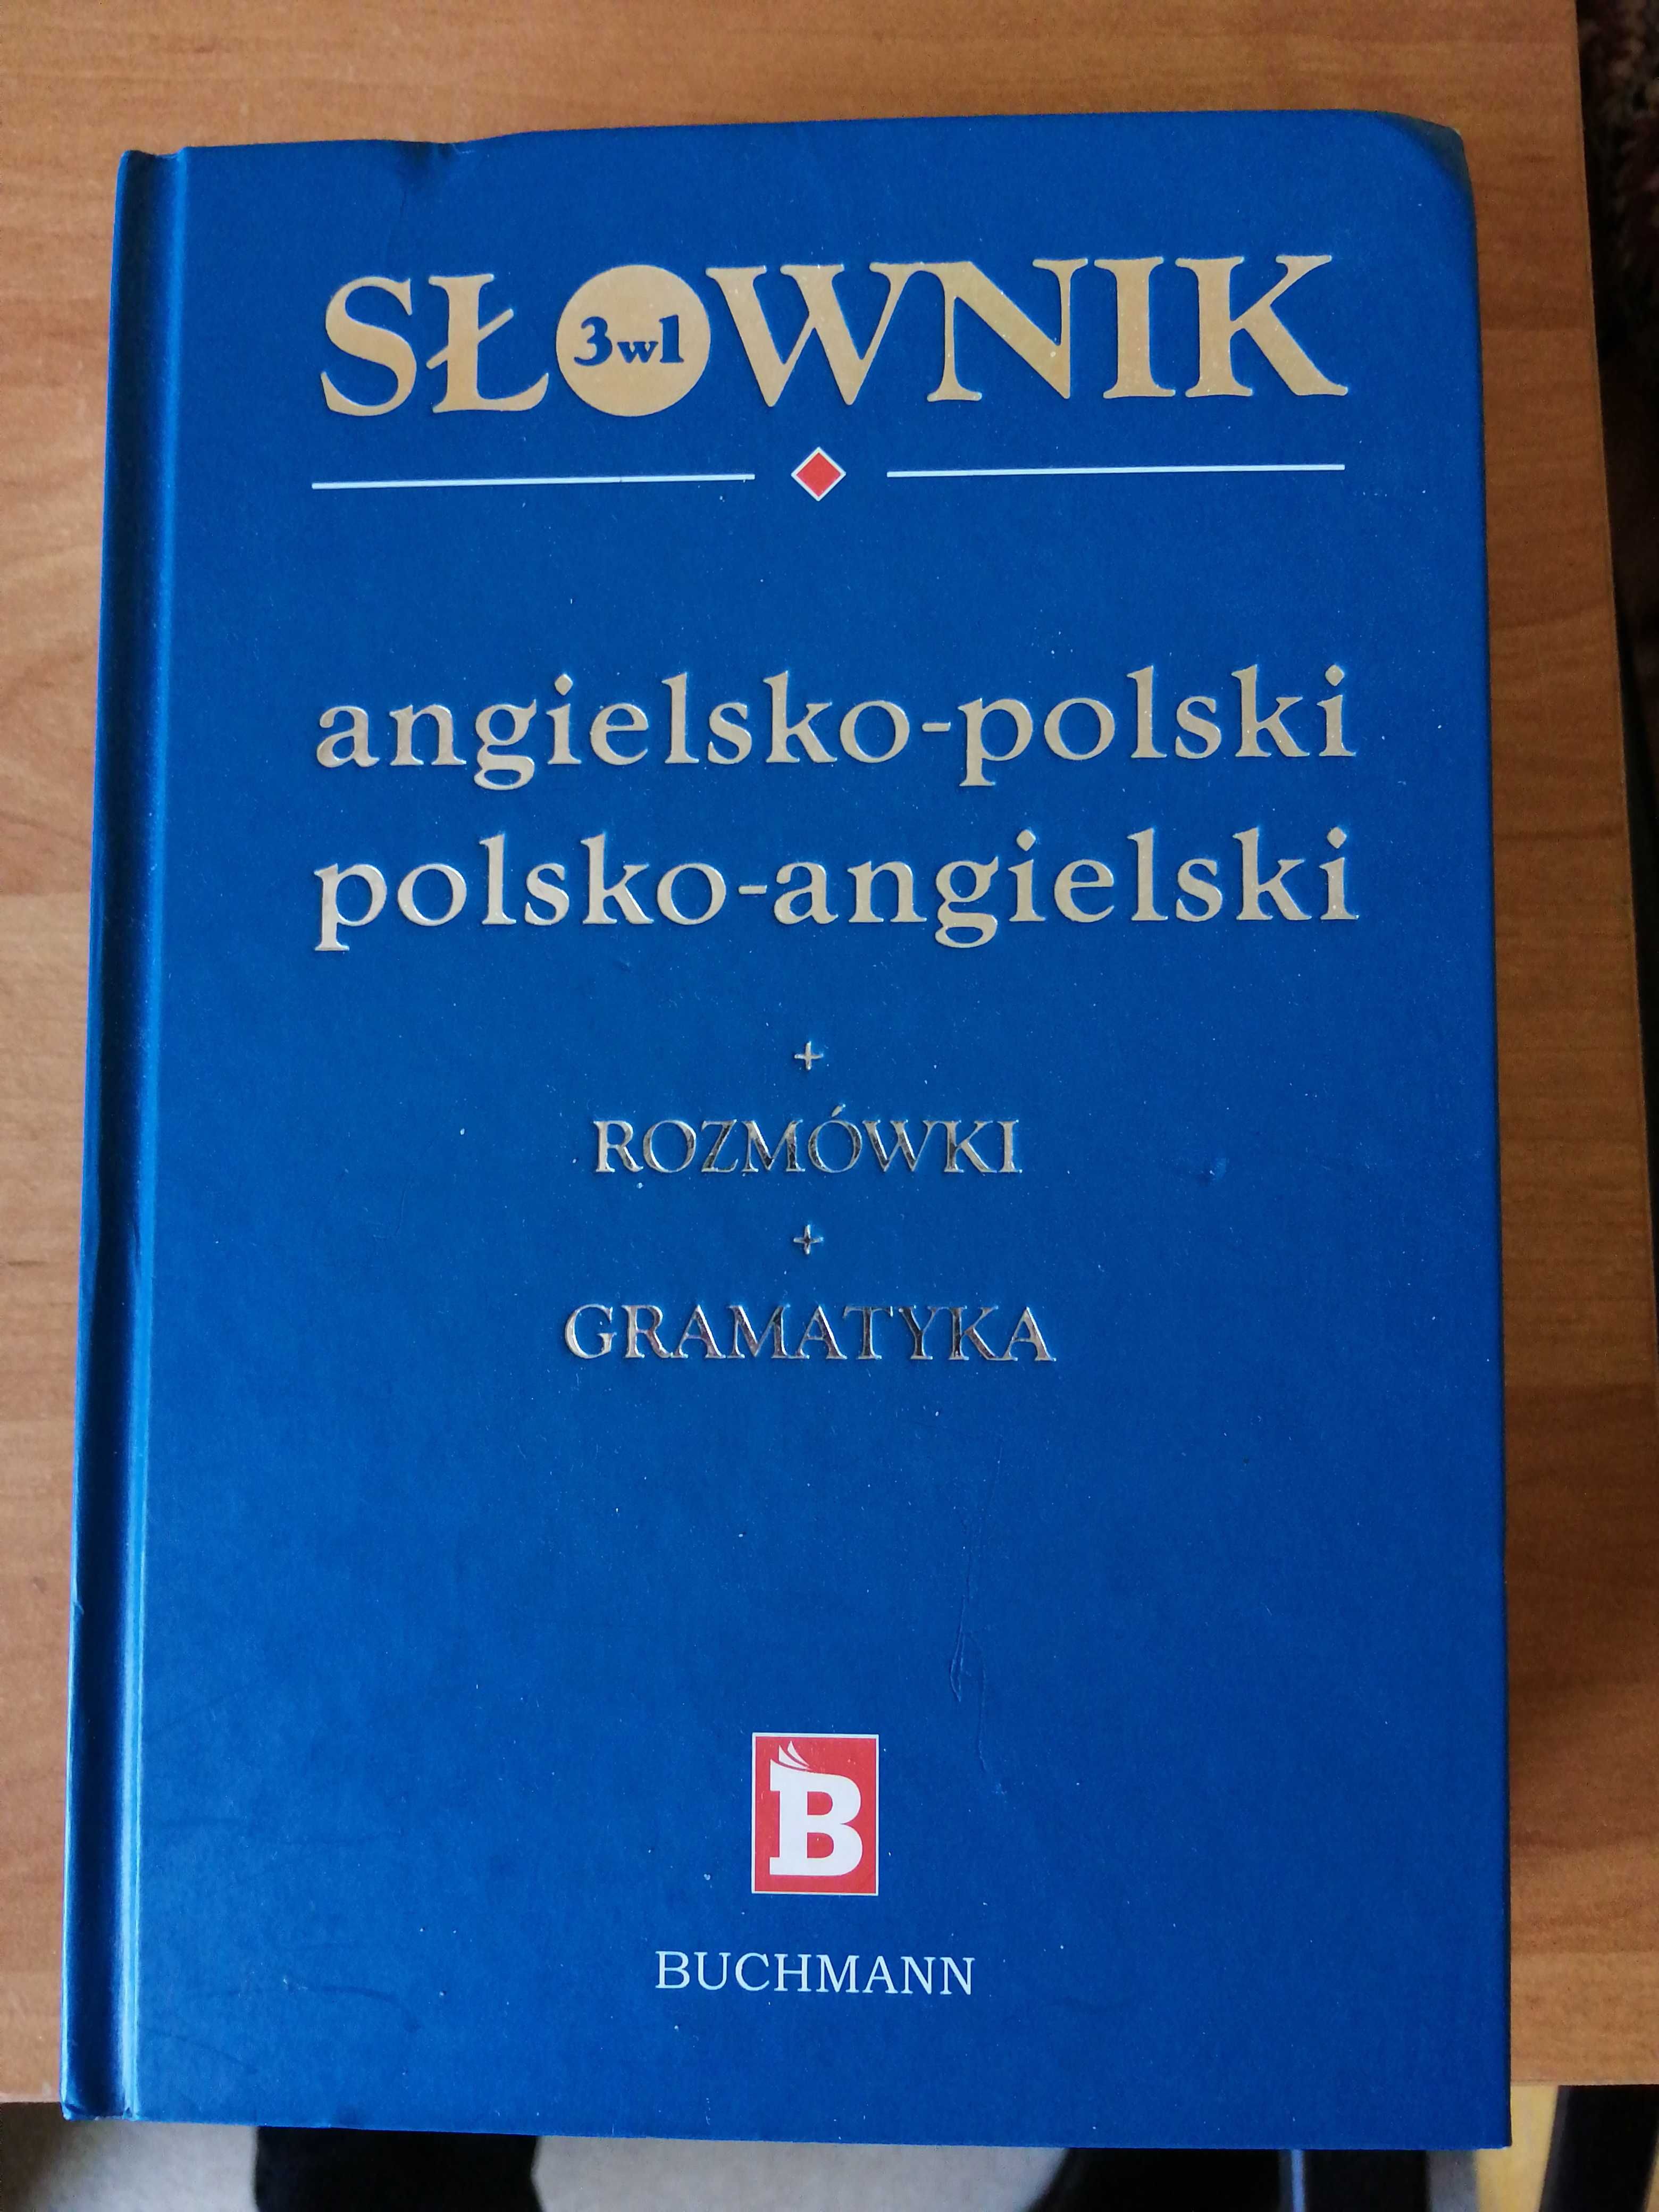 Słownik polski-angielski i odwrotnie